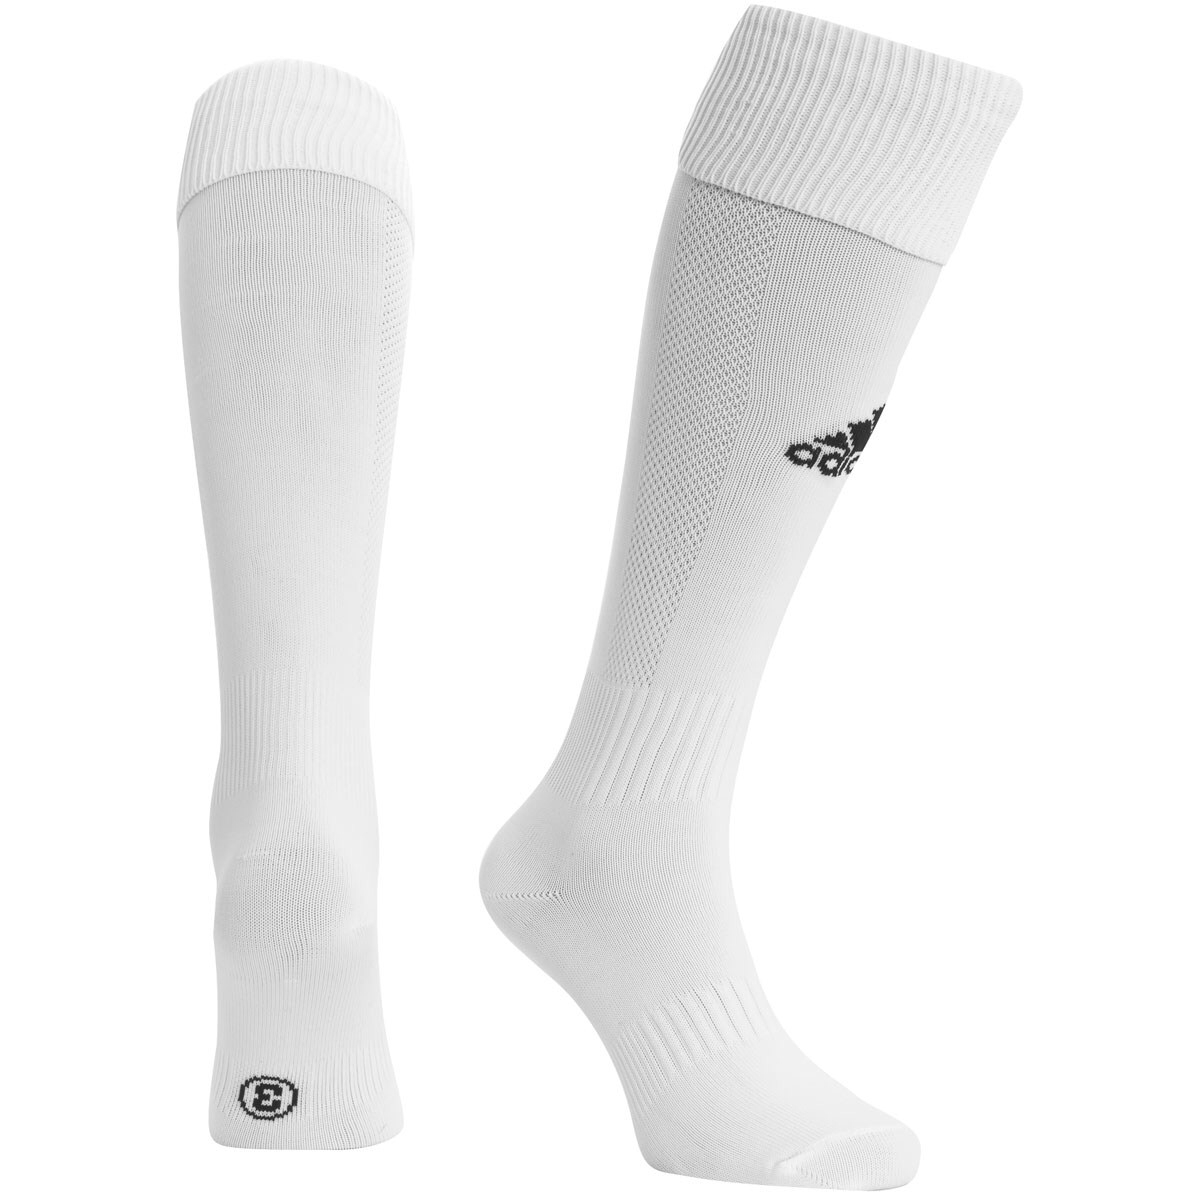 Adidas Milano Socks (White) - The Football Factory